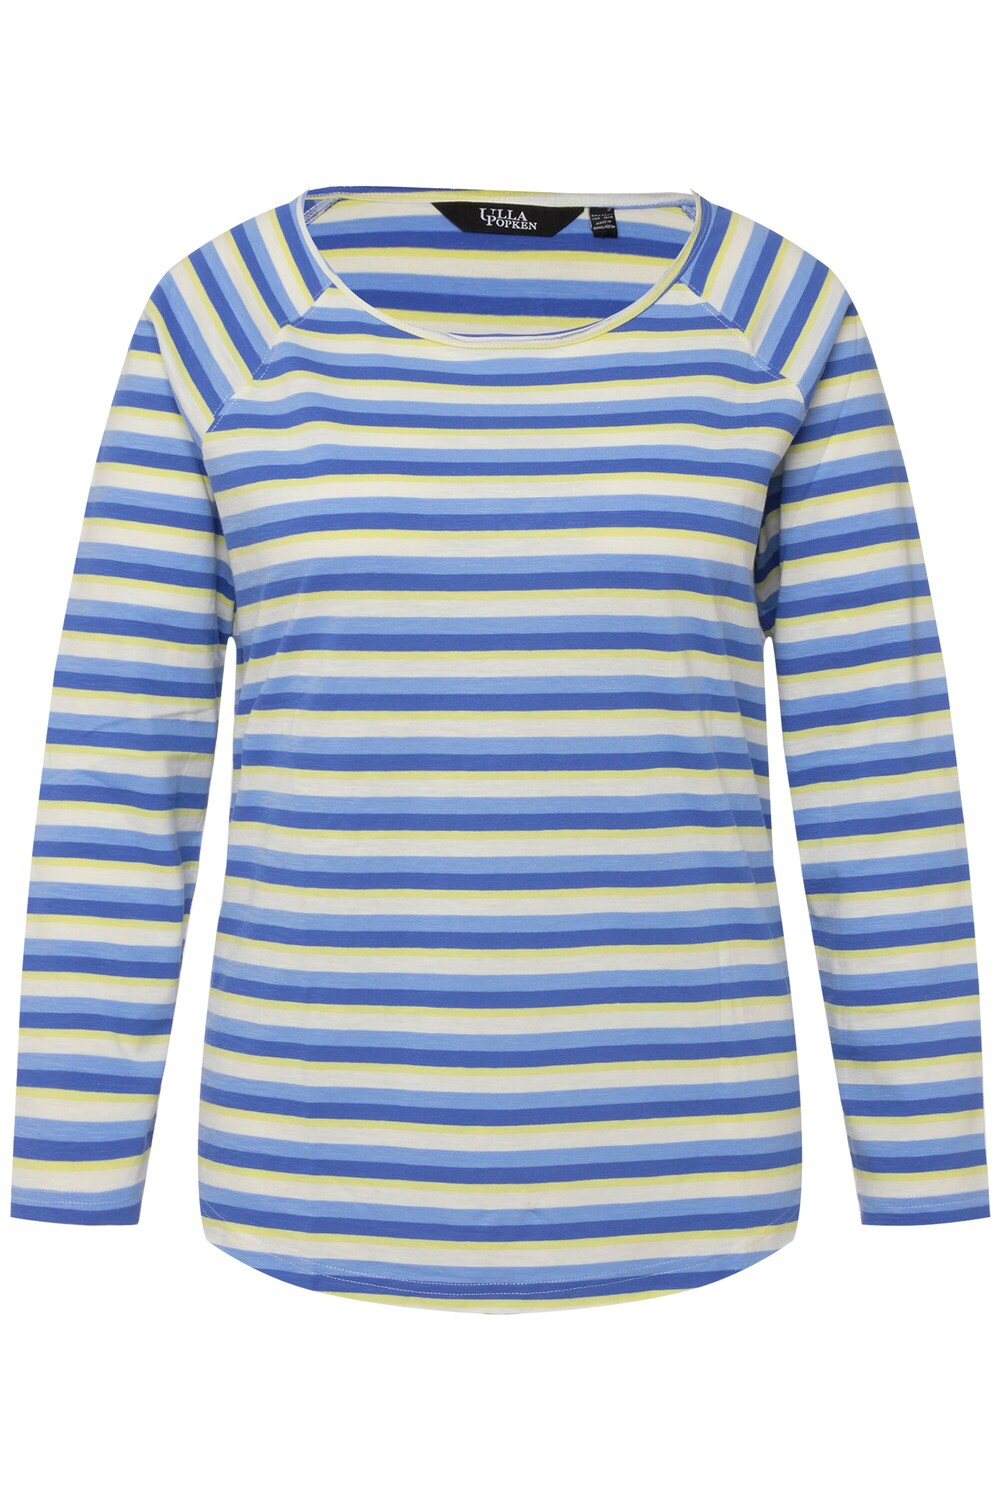 Рубашка Ulla Popken, пастельно-синий